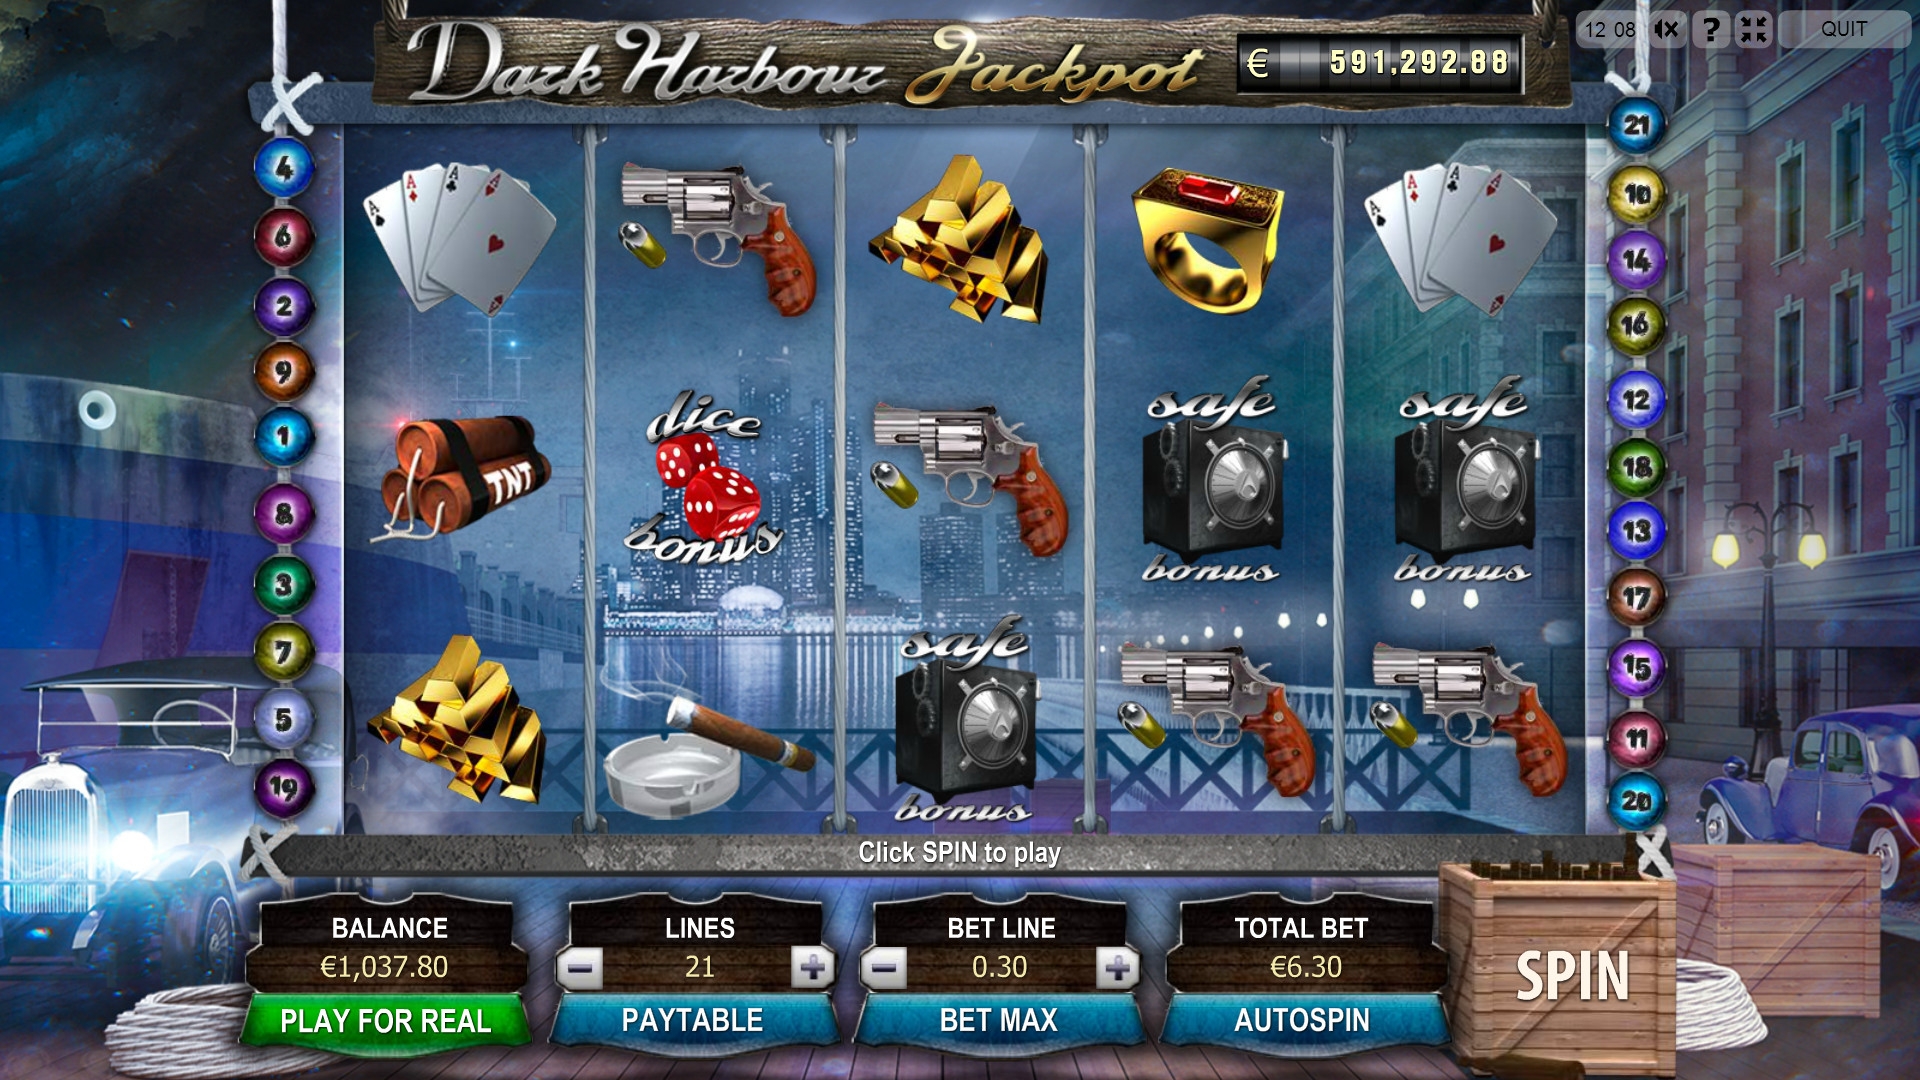 Dark Harbour Jackpot (Джекпот темной гавани) из раздела Игровые автоматы